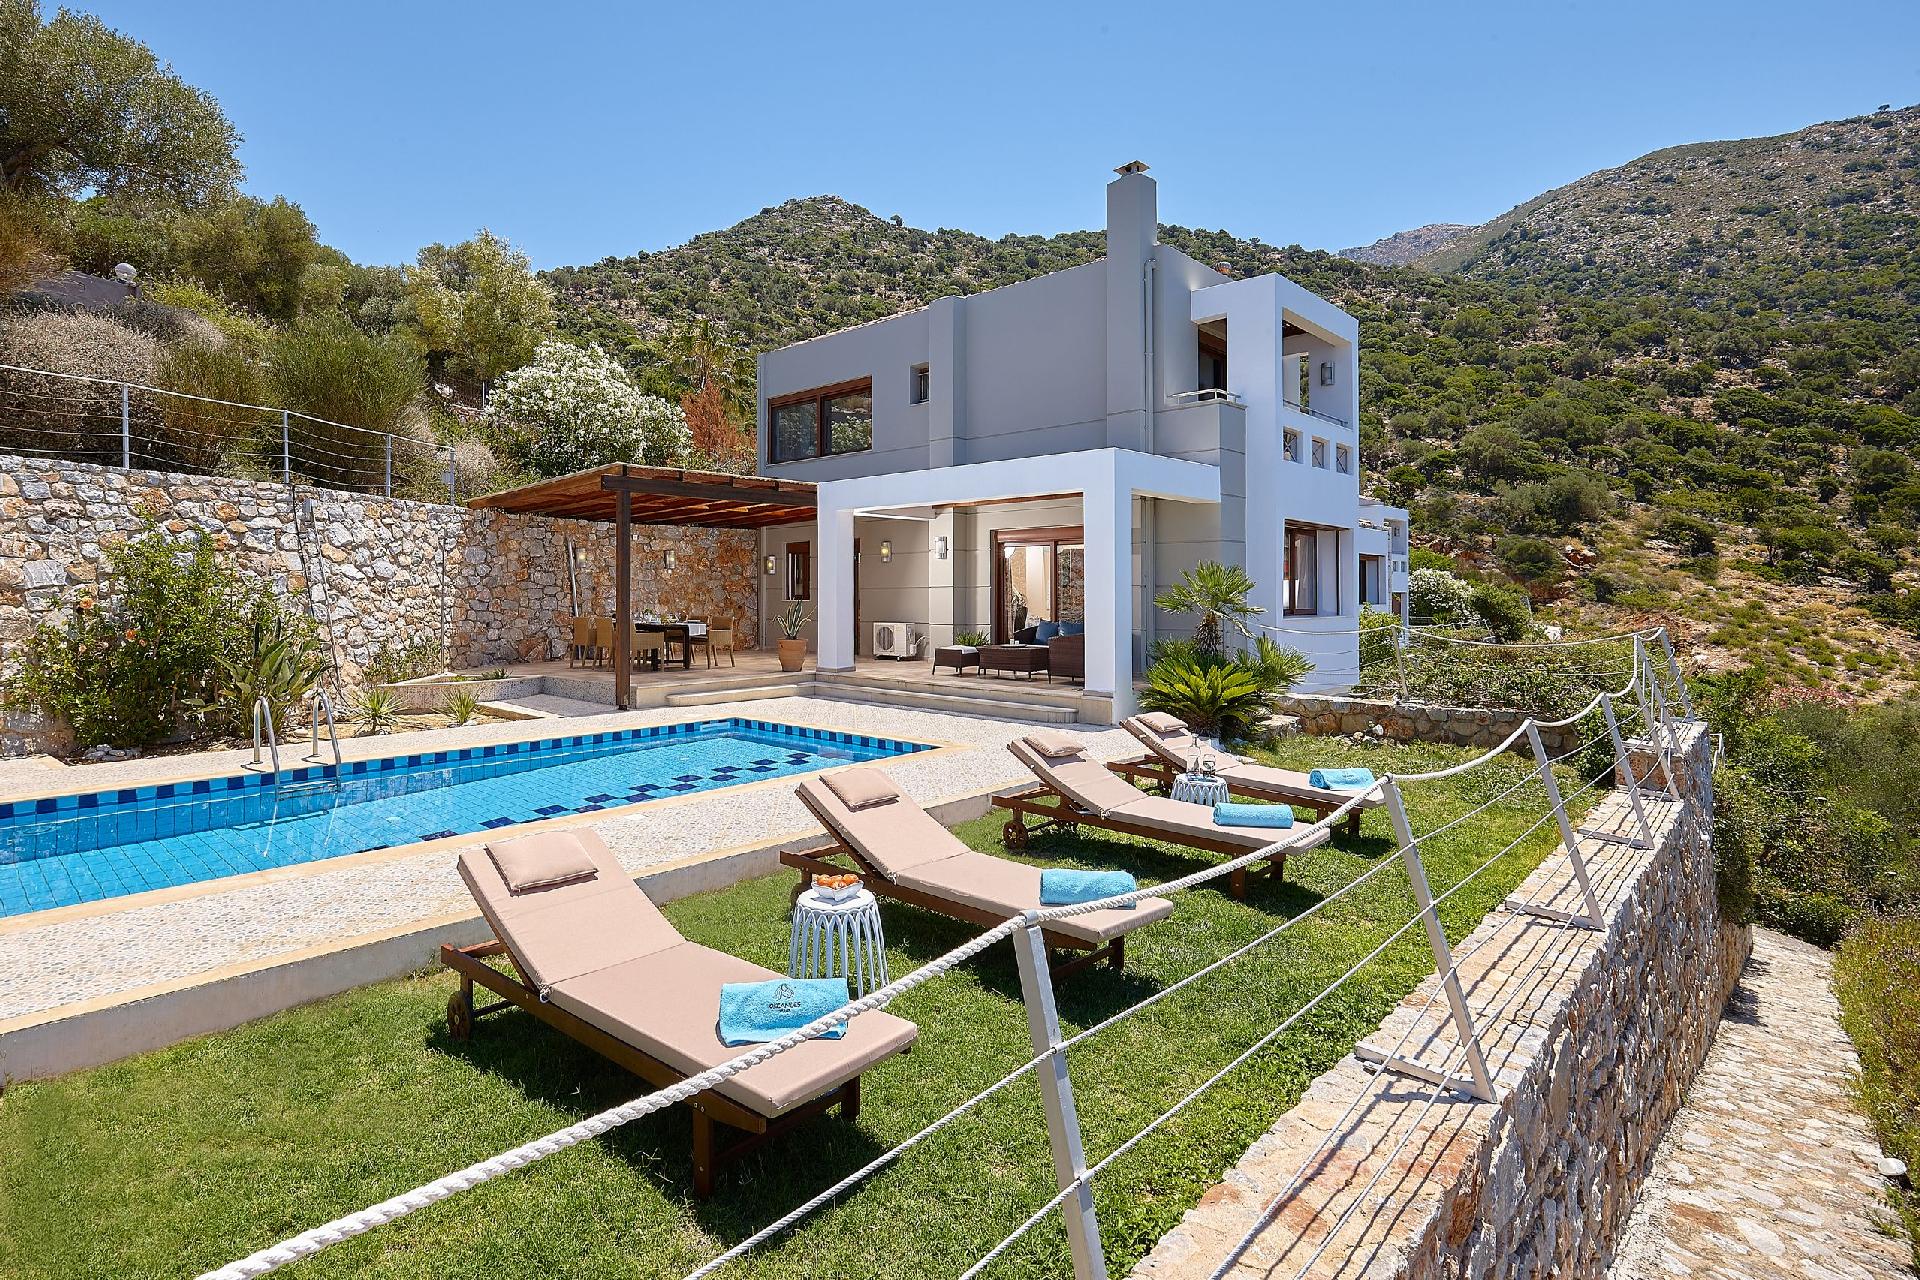 Ferienhaus mit Privatpool für 8 Personen ca.  Ferienhaus in Griechenland